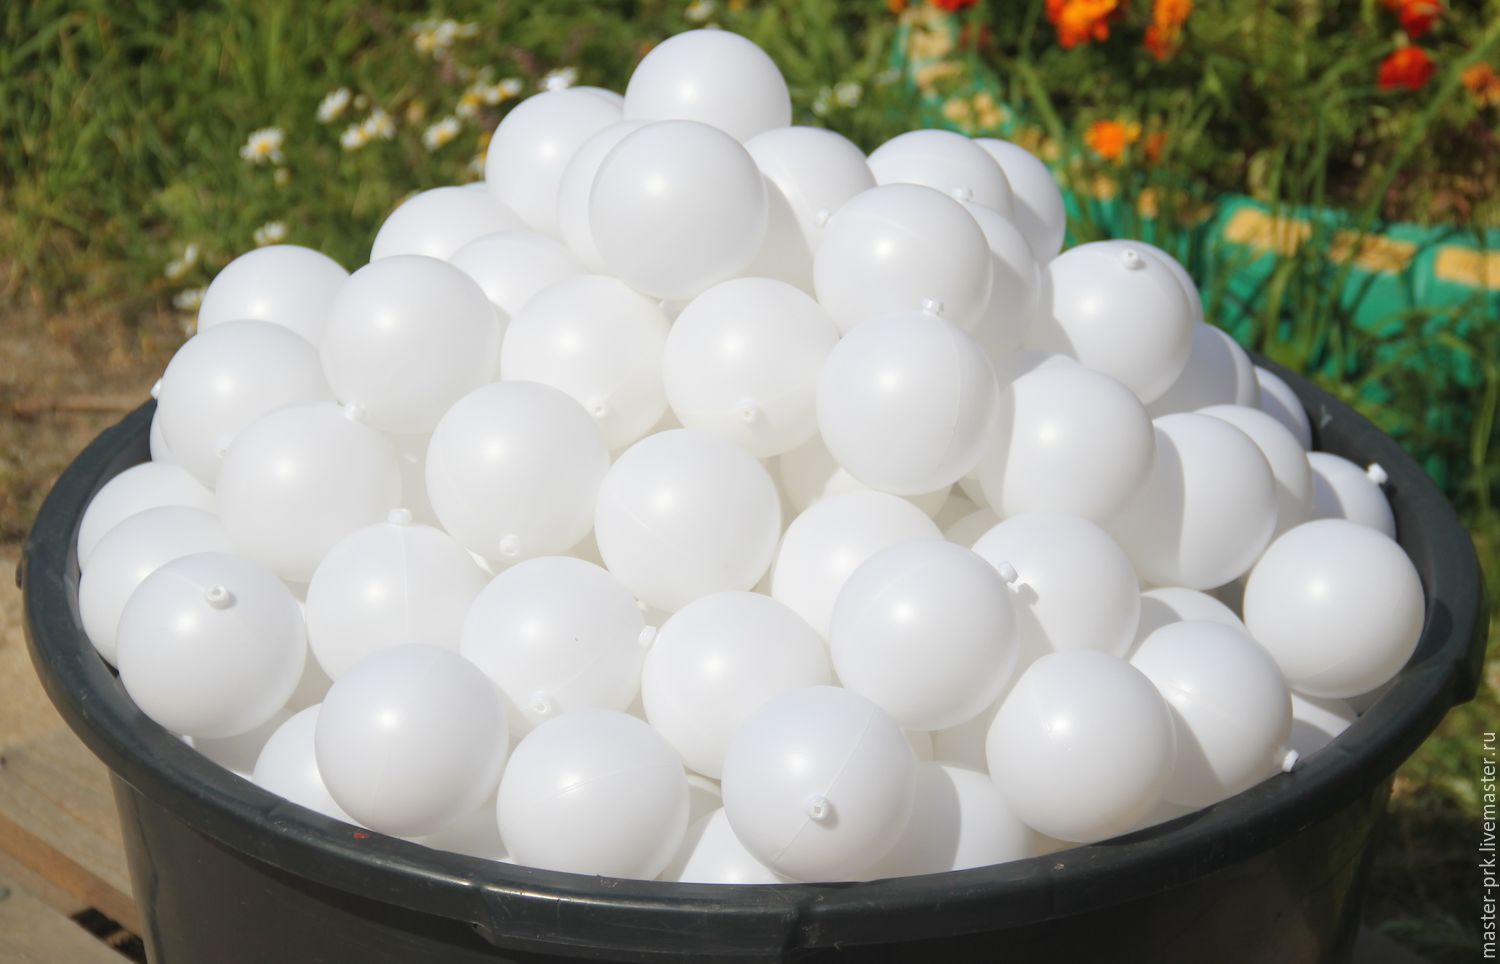 Купить шарик цена. Пластиковые шары. Белые пластиковые шарики. Полиэтиленовые шарики. Пластиковые шары для декорирования.